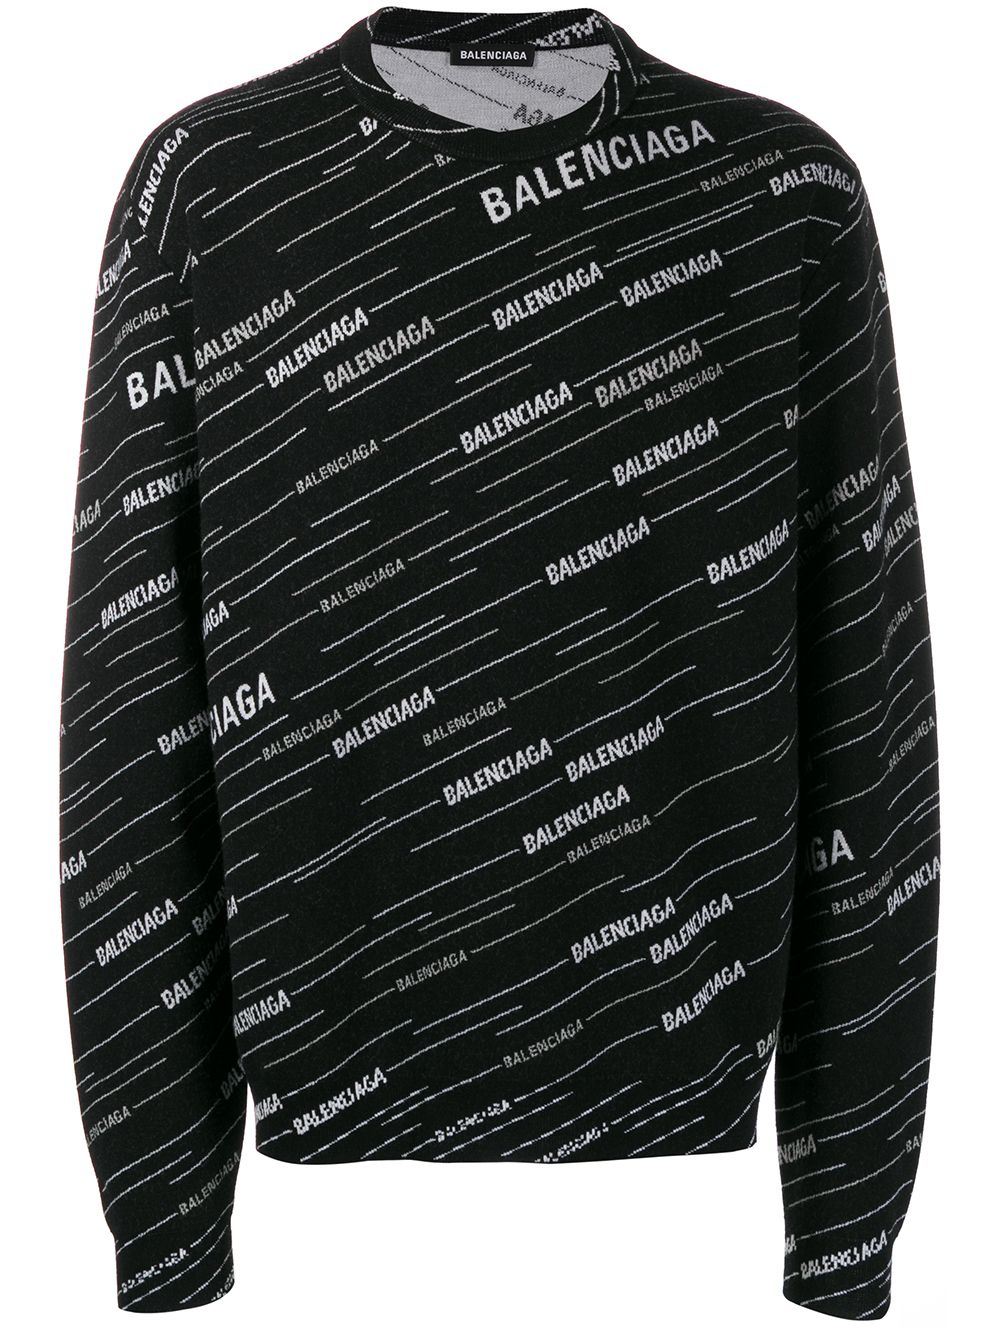 Shop black Balenciaga jacquard logo 